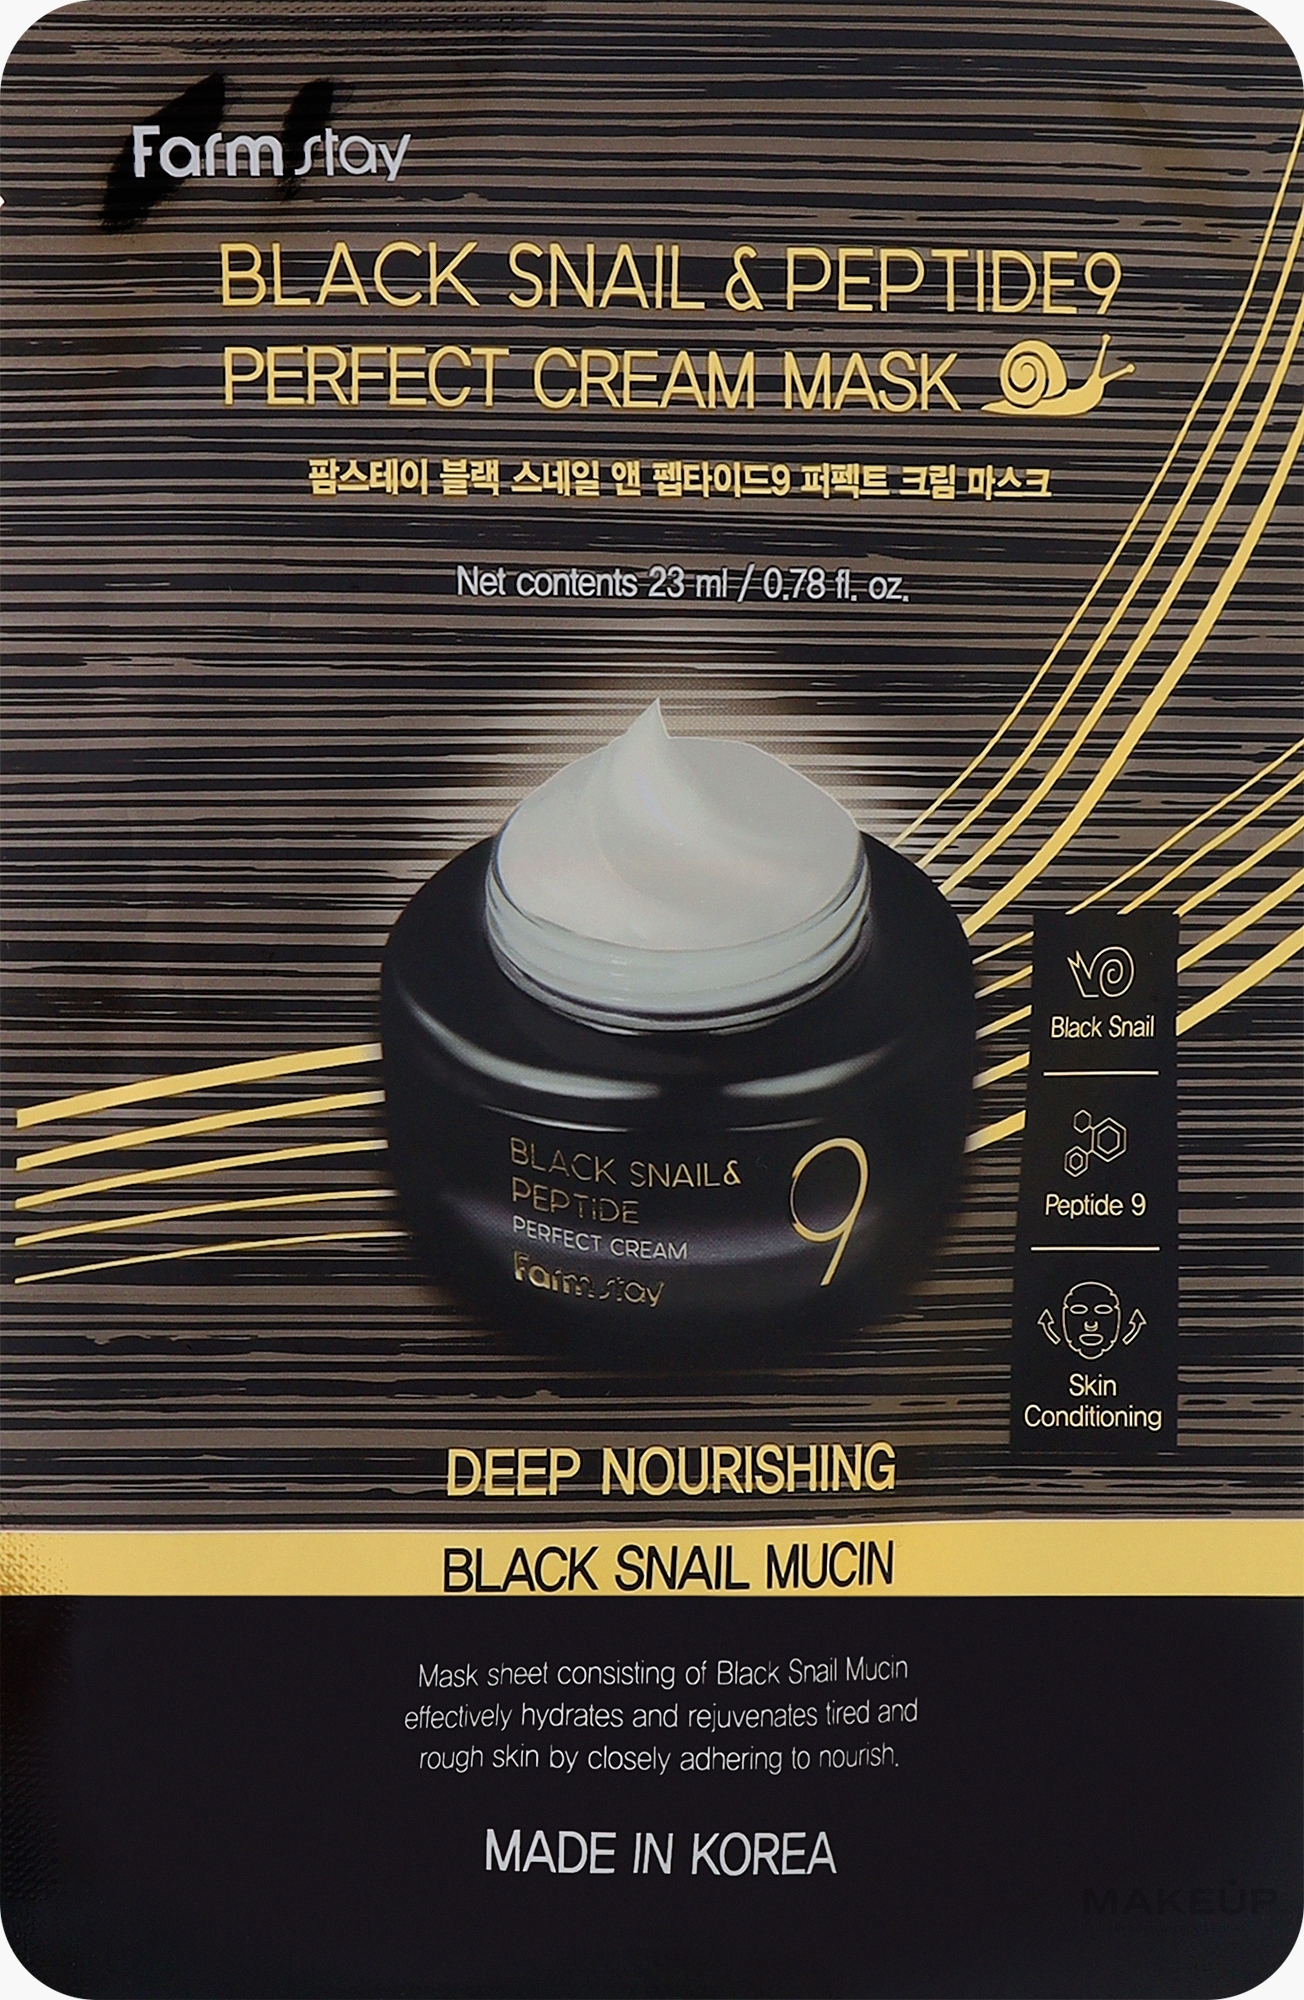 Крем-маска с экстрактом черной улитки и пептидом - FarmStay Black Snail & Peptides 9 Prefect Cream Mask — фото 23ml